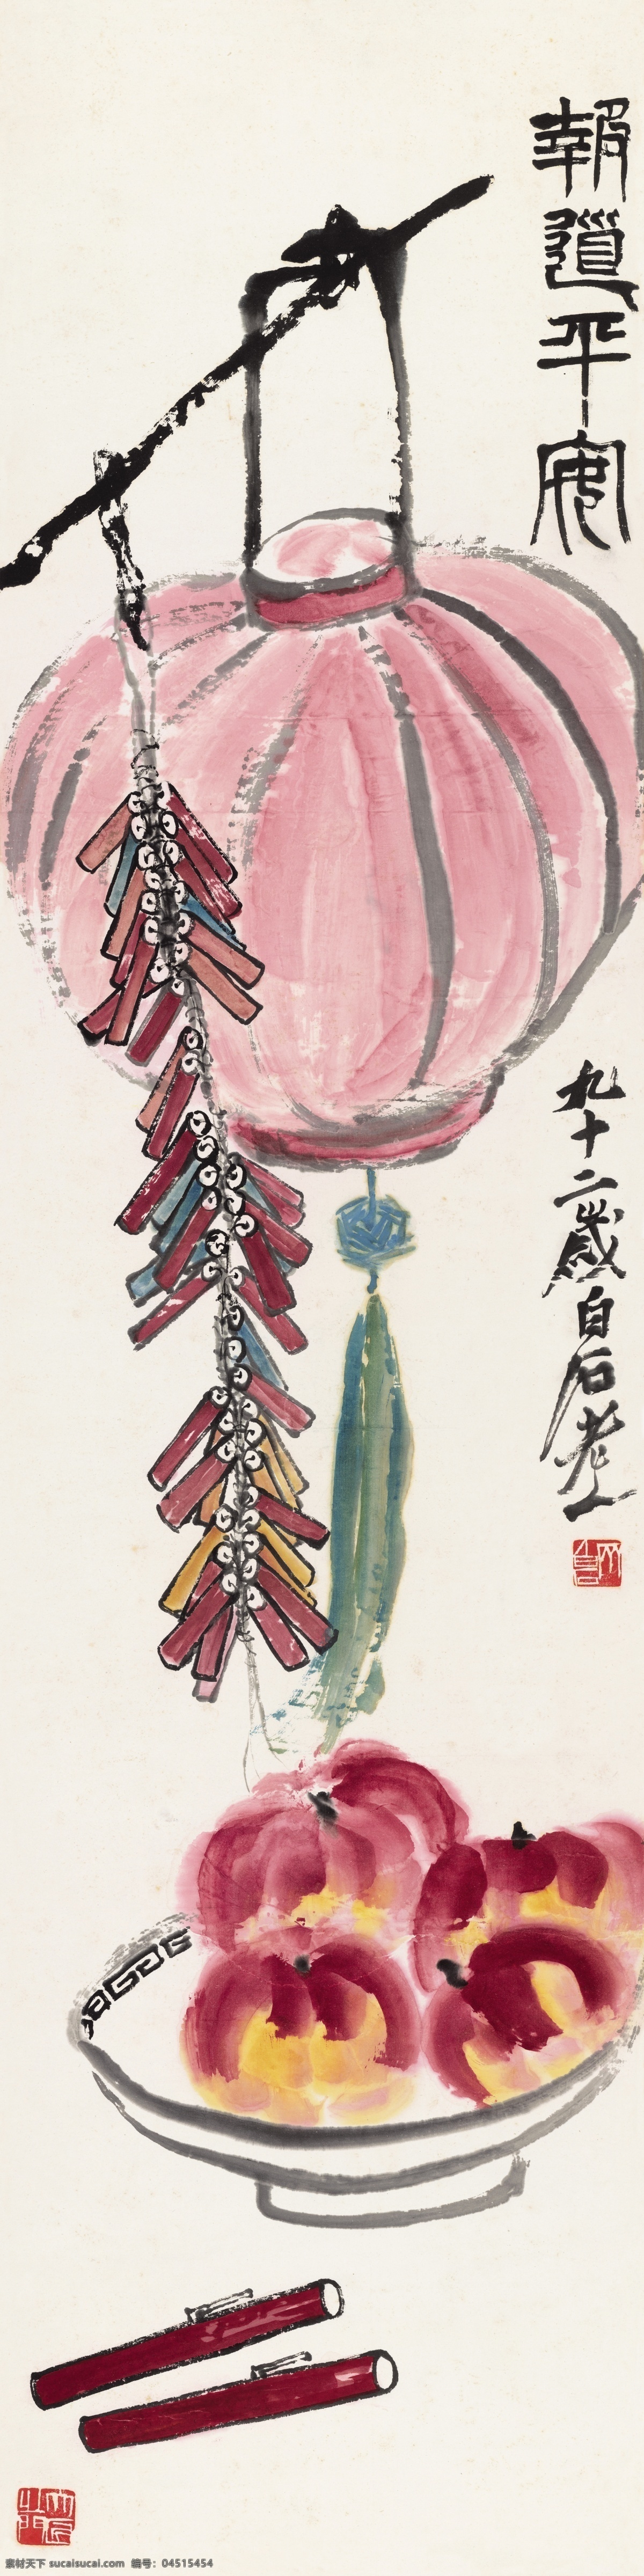 齐白石 报道平安 条幅 字画 灯笼 鞭炮 寿桃 文化艺术 绘画书法